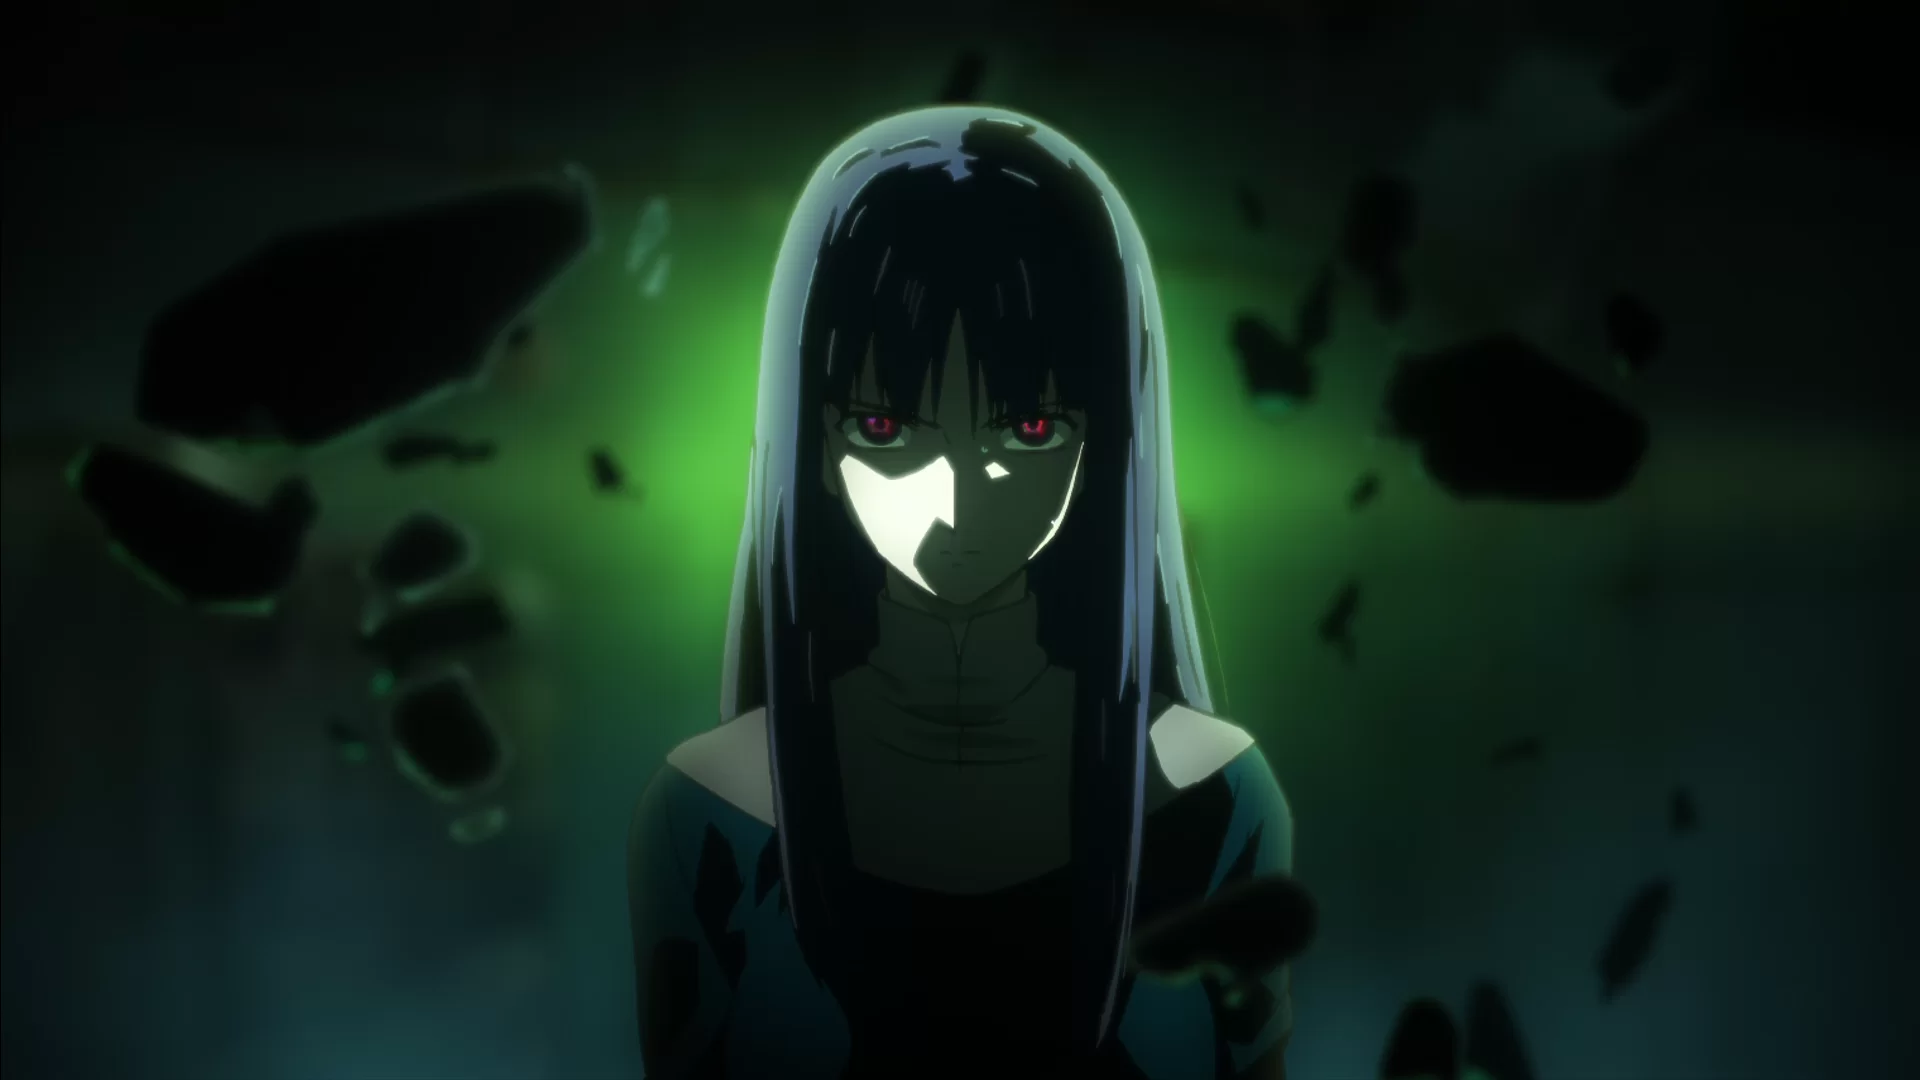 Minaturka 3 odcinka anime Kara no Kyoukai